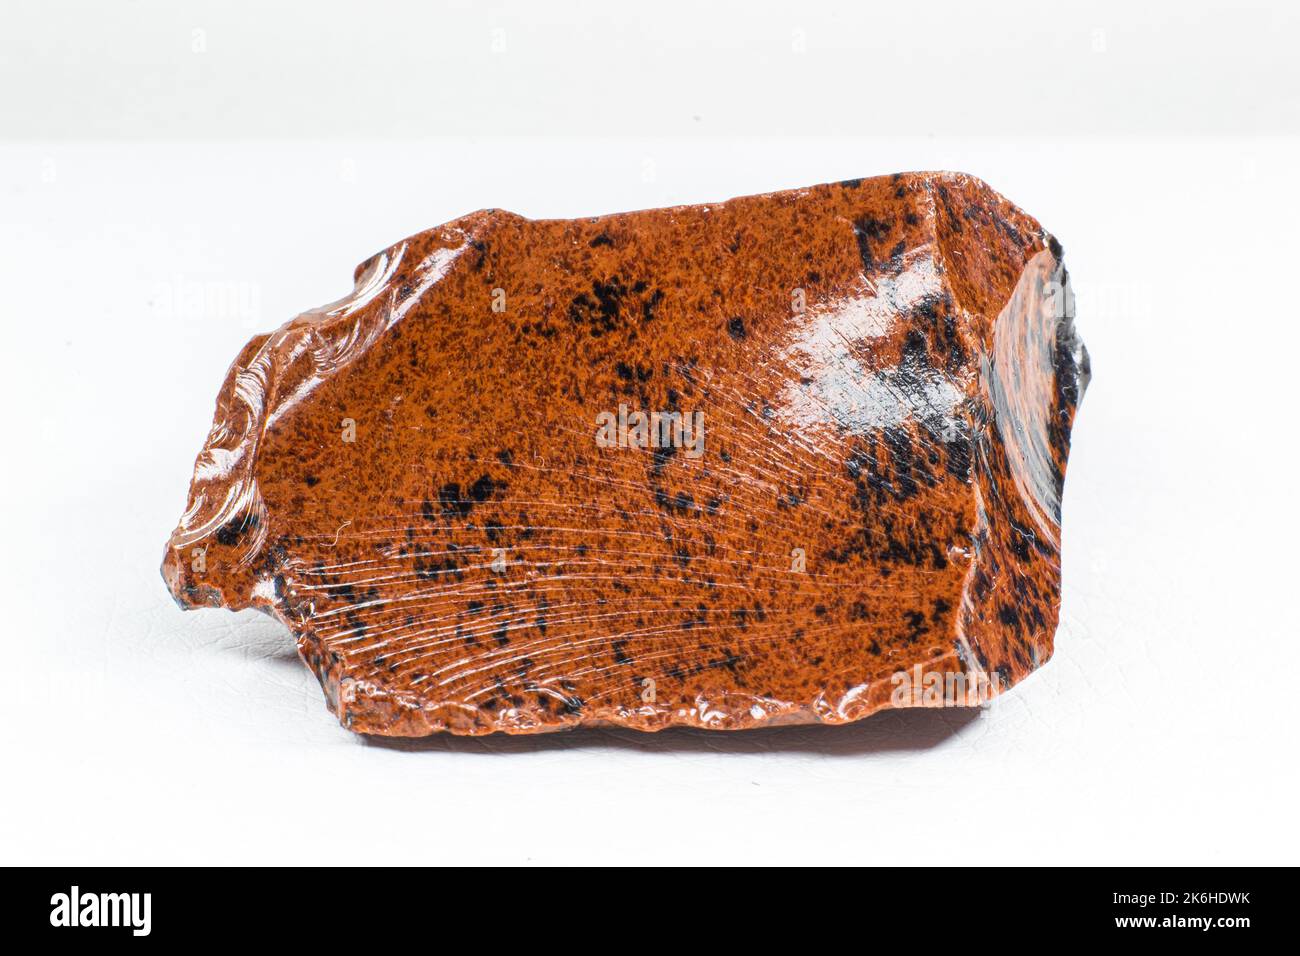 Real shiny specimen of orange Mahogany Obsidian volcanic stone macro isolated on white background Stock Photo